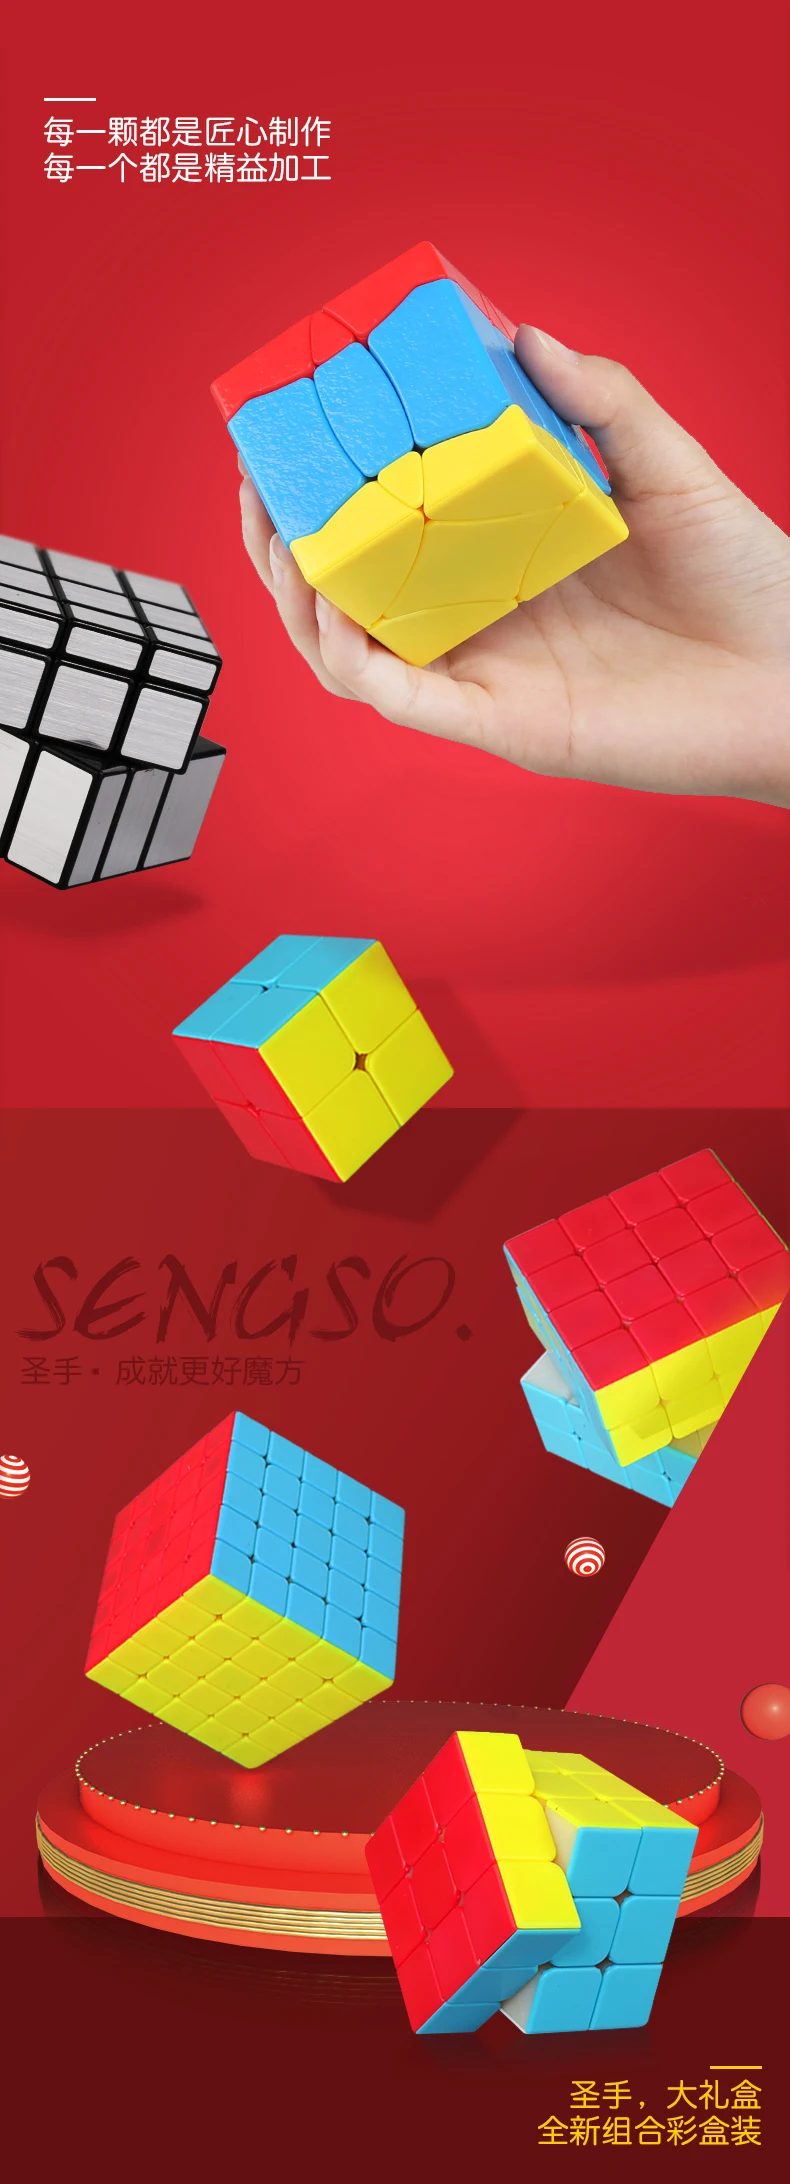 Shengshou Комплект 6 шт./компл. подарочный набор Magic Cube 2x2x2 3x3x3, 4x4x4, 5x5x5, зеркальный BaiNiaoChaoFeng, головоломка, развивающие игрушки для детей